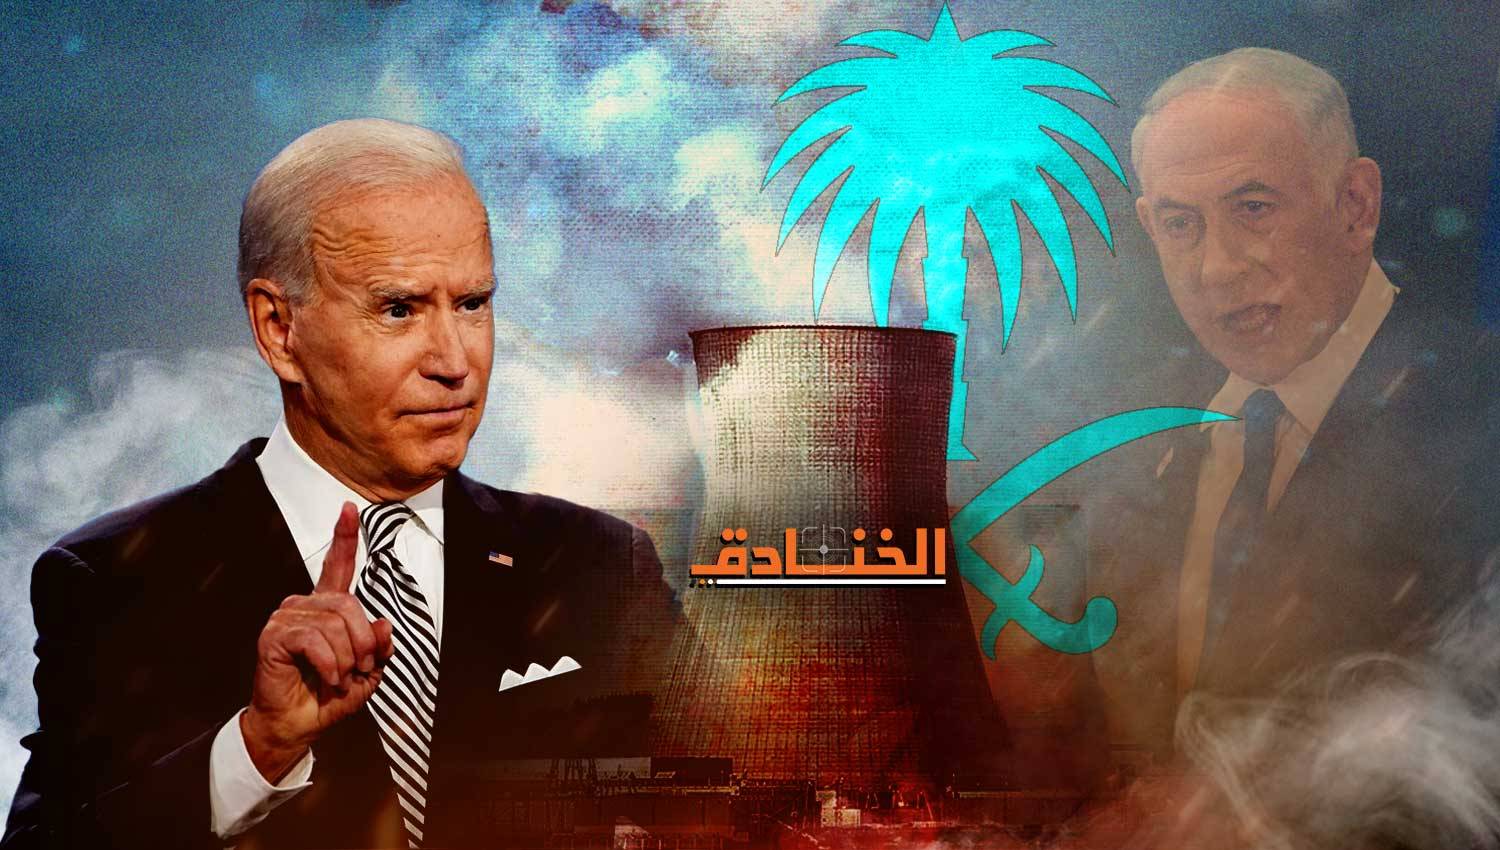 الانقسام الأميركي السعودي حول تزويد الرياض ببرنامج نووي: العبرة في الخواتيم